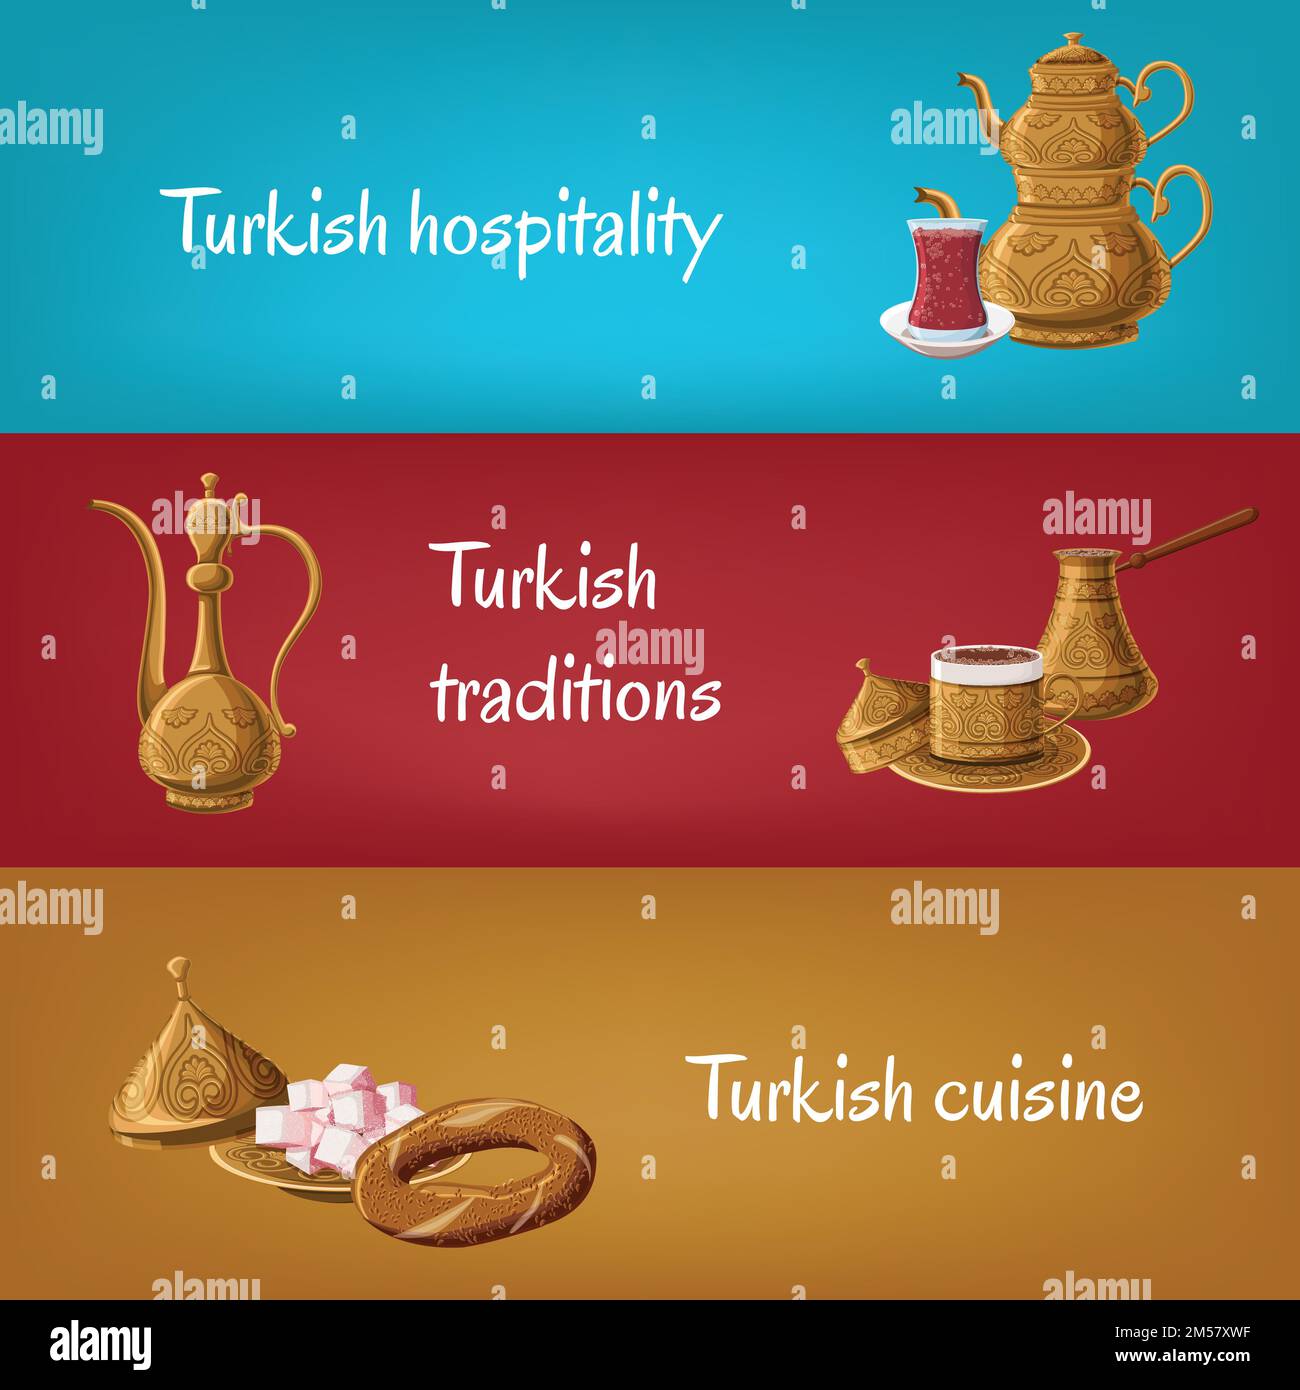 Türkische Touristik-Banner mit Messing-Utensilien, doppelte Teekanne, Teeglas, Locum, Krug, Kaffee, simit Türkische Gastfreundschaft, Traditionen, Küche. Reisen Stock Vektor